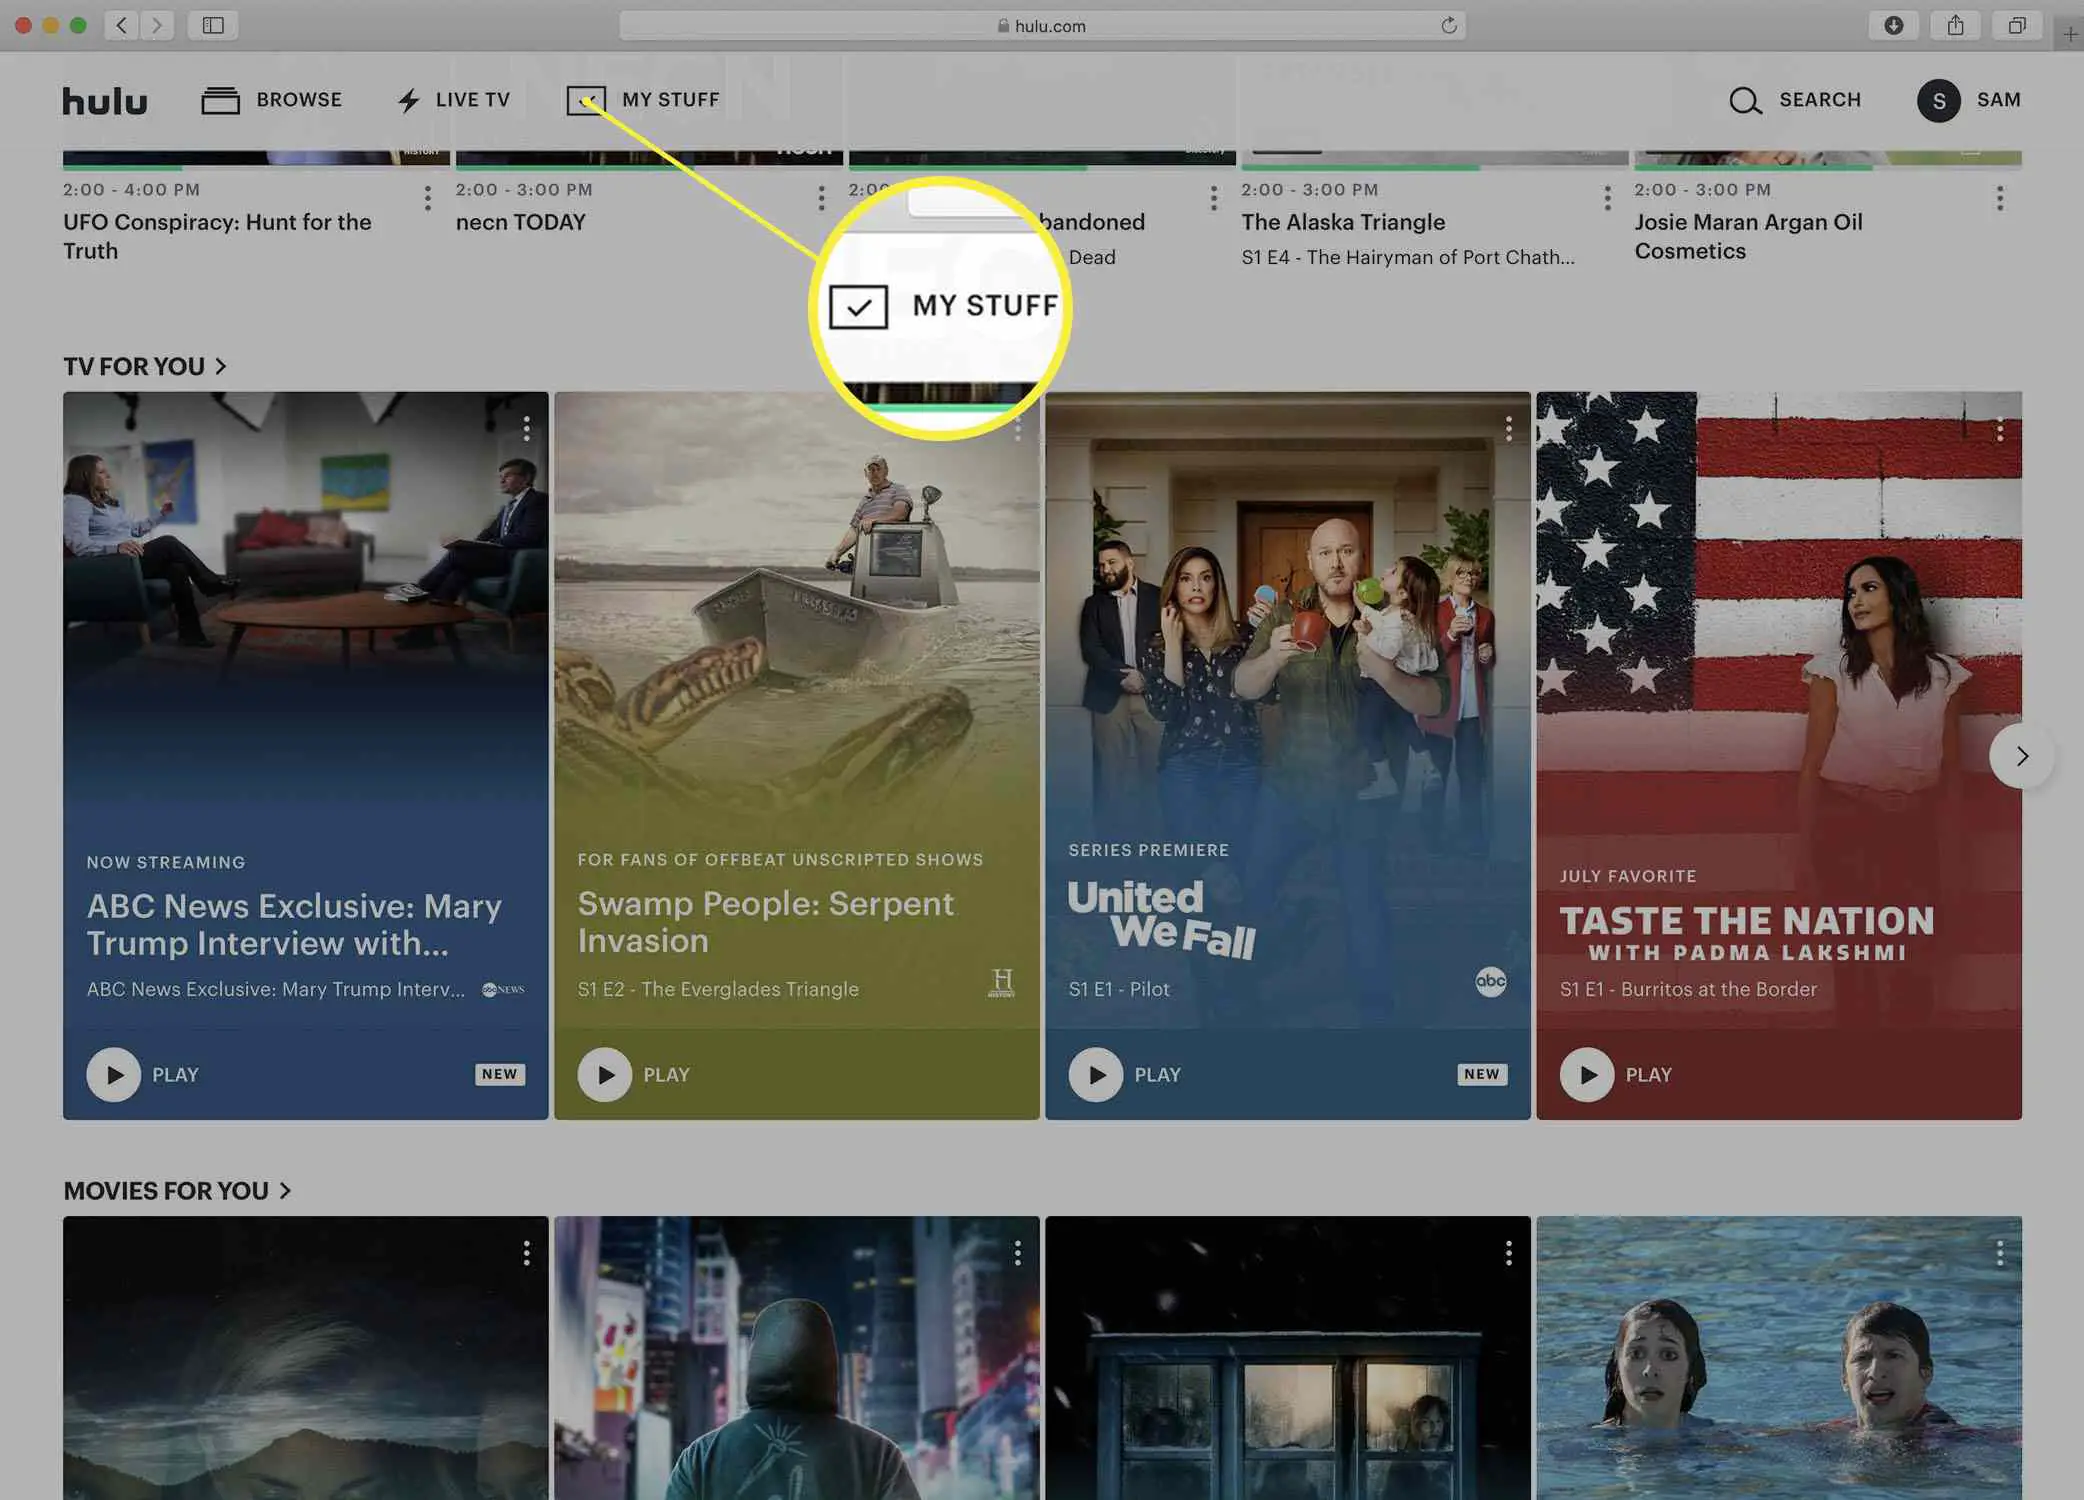 Captura de tela da página inicial do Hulu.